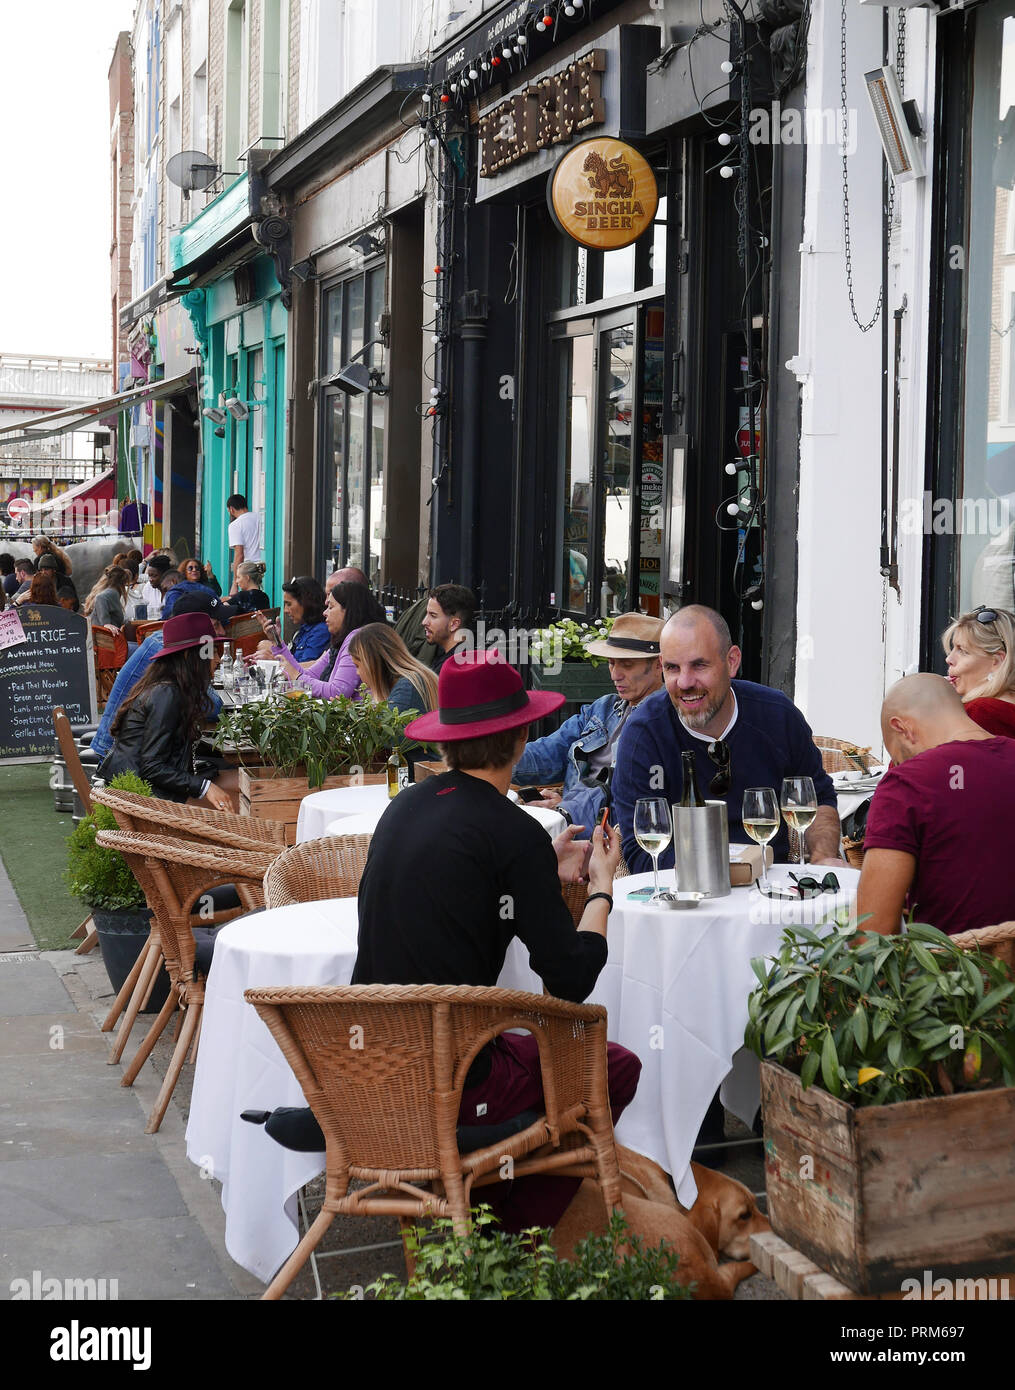 La gente cenando en los cafés de carretera en el Portobello Road en Londres W11 Foto de stock